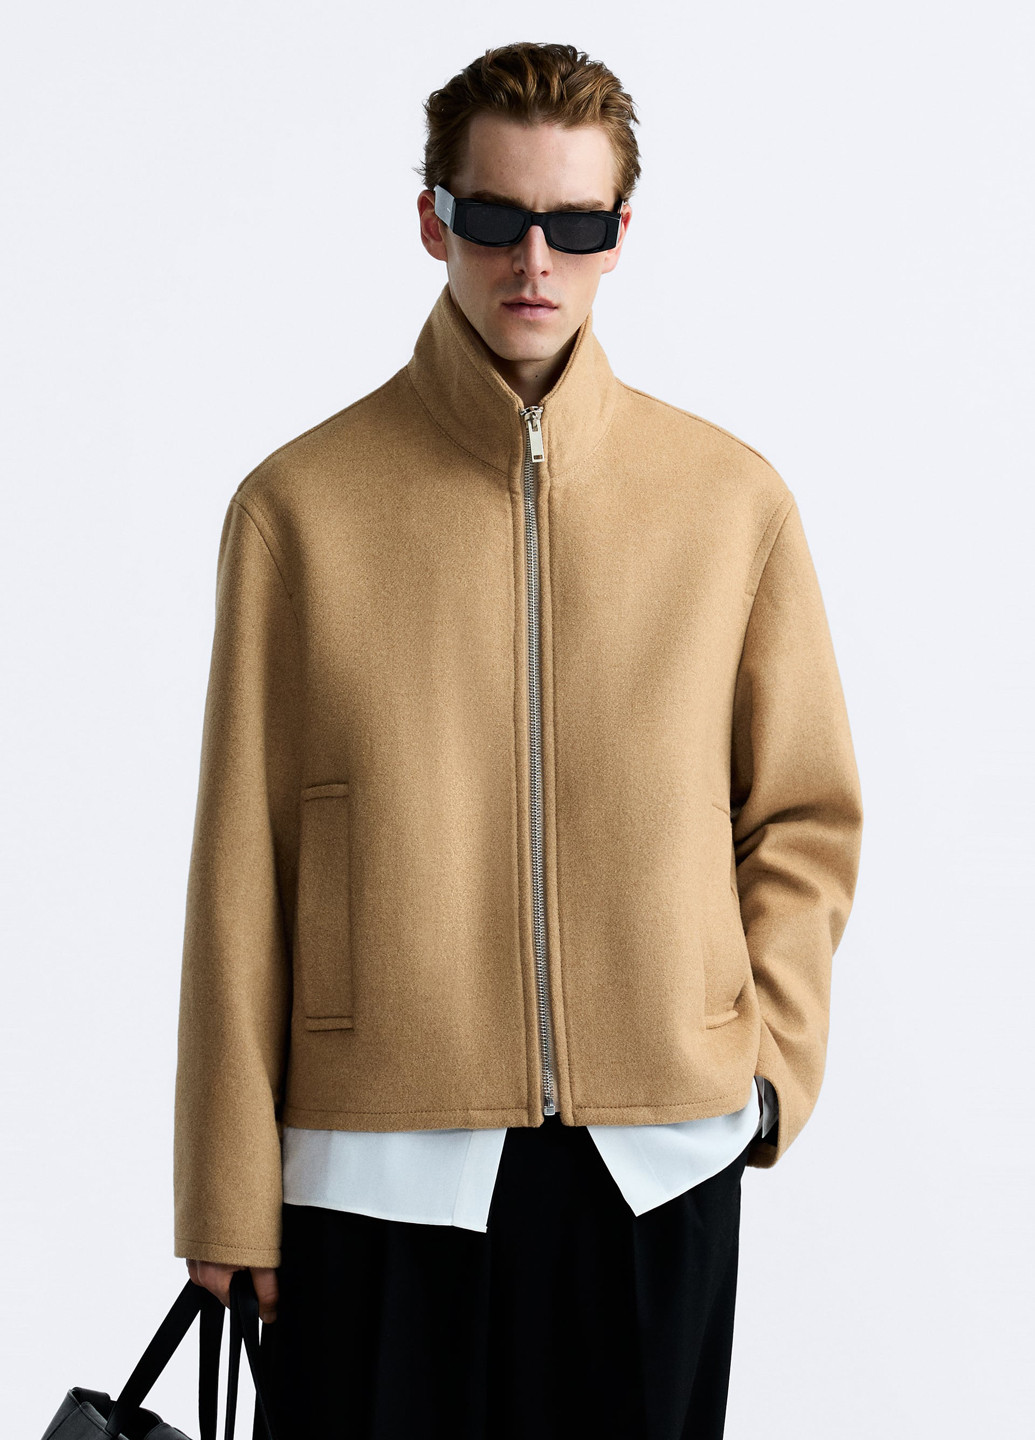 Светло-коричневая демисезонная куртка куртка-пиджак Zara